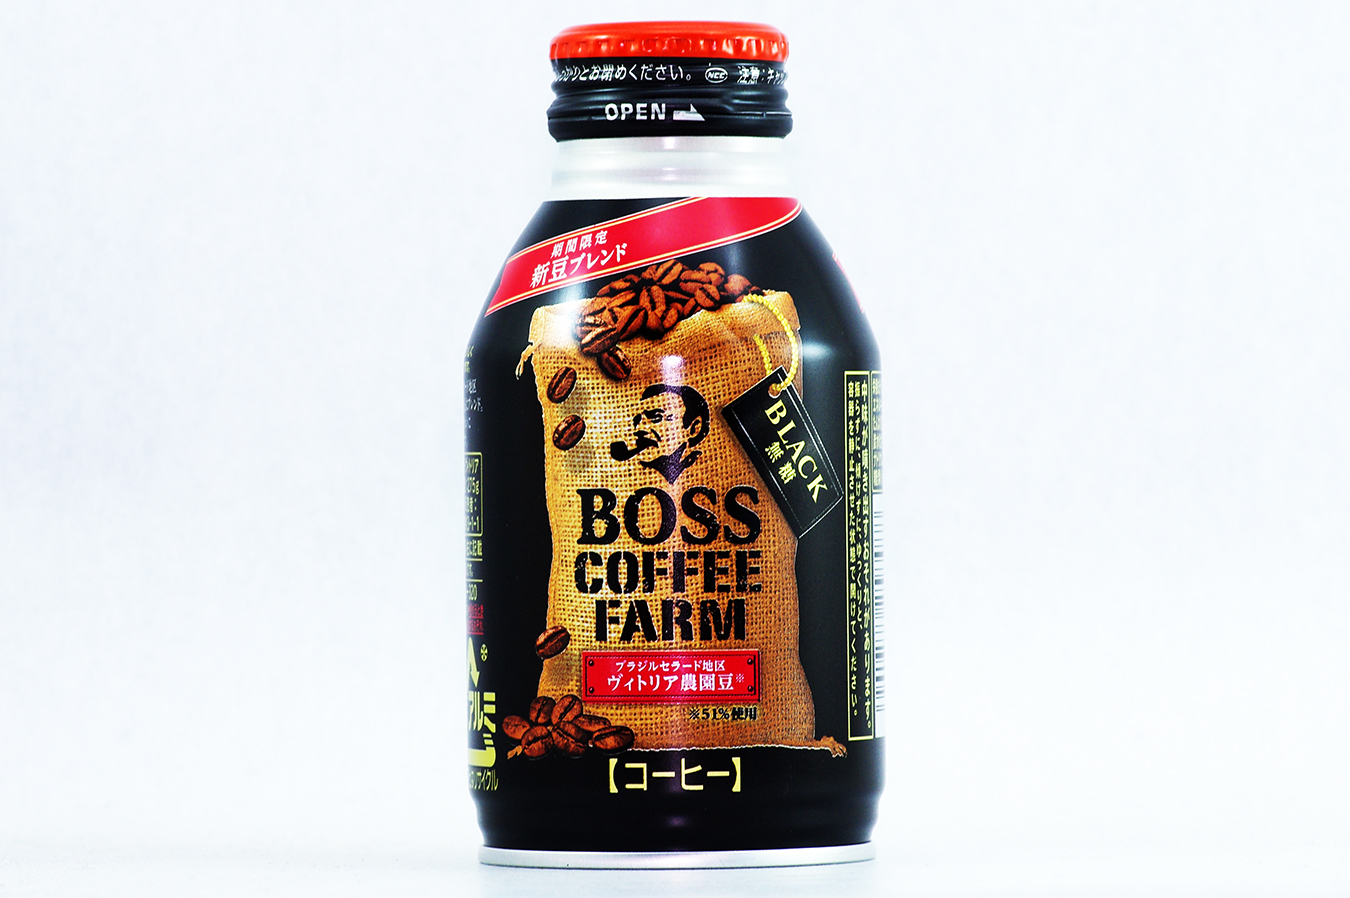 BOSS COFFEE FARM ブラック 期間限定 新豆ブレンド 2017年4月